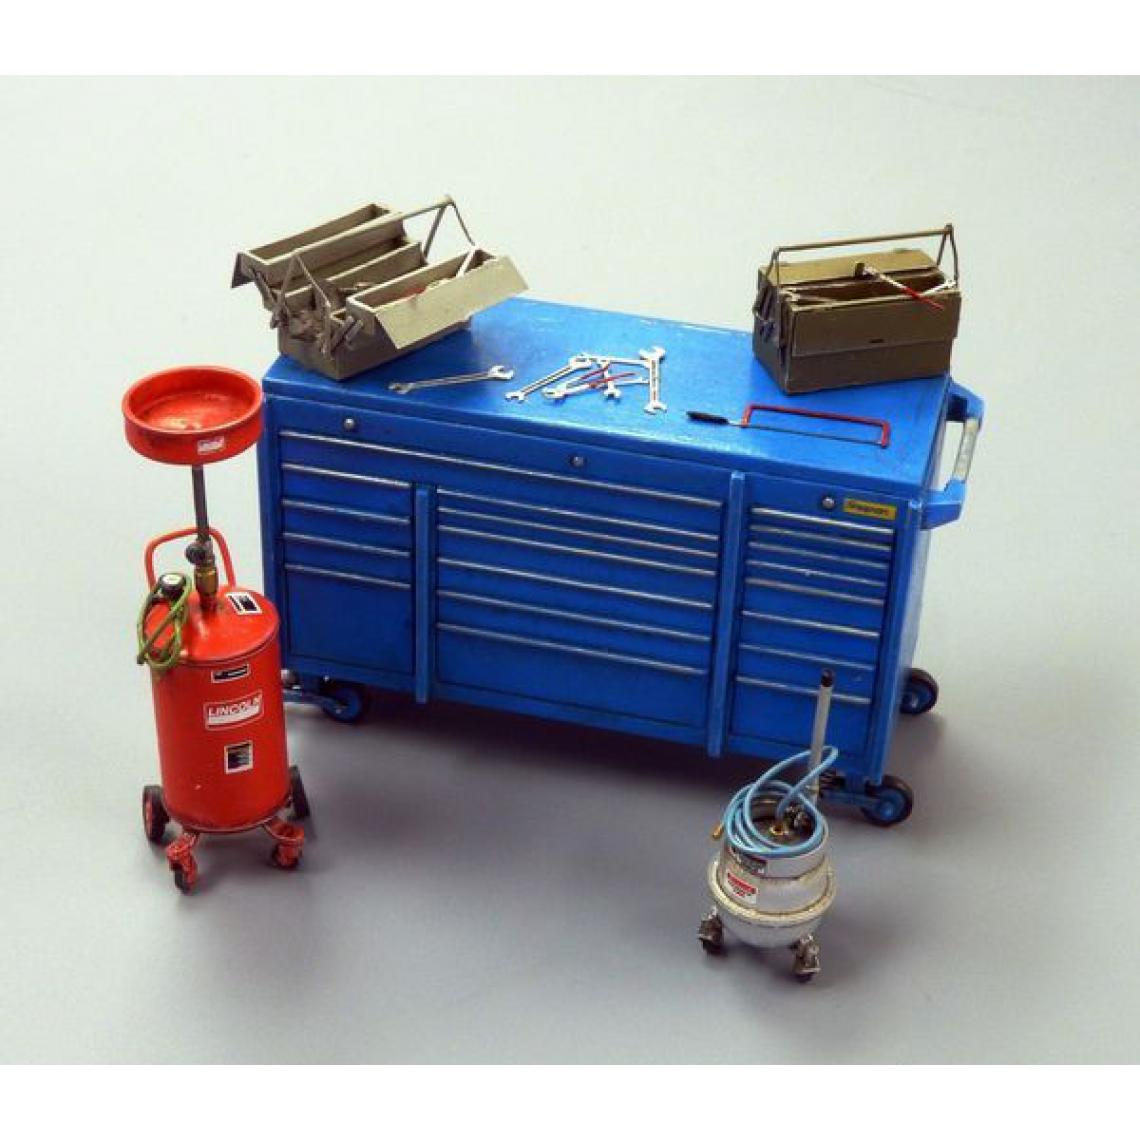 Plus Model - Garage equipment - 1:35e - Plus model - Accessoires et pièces